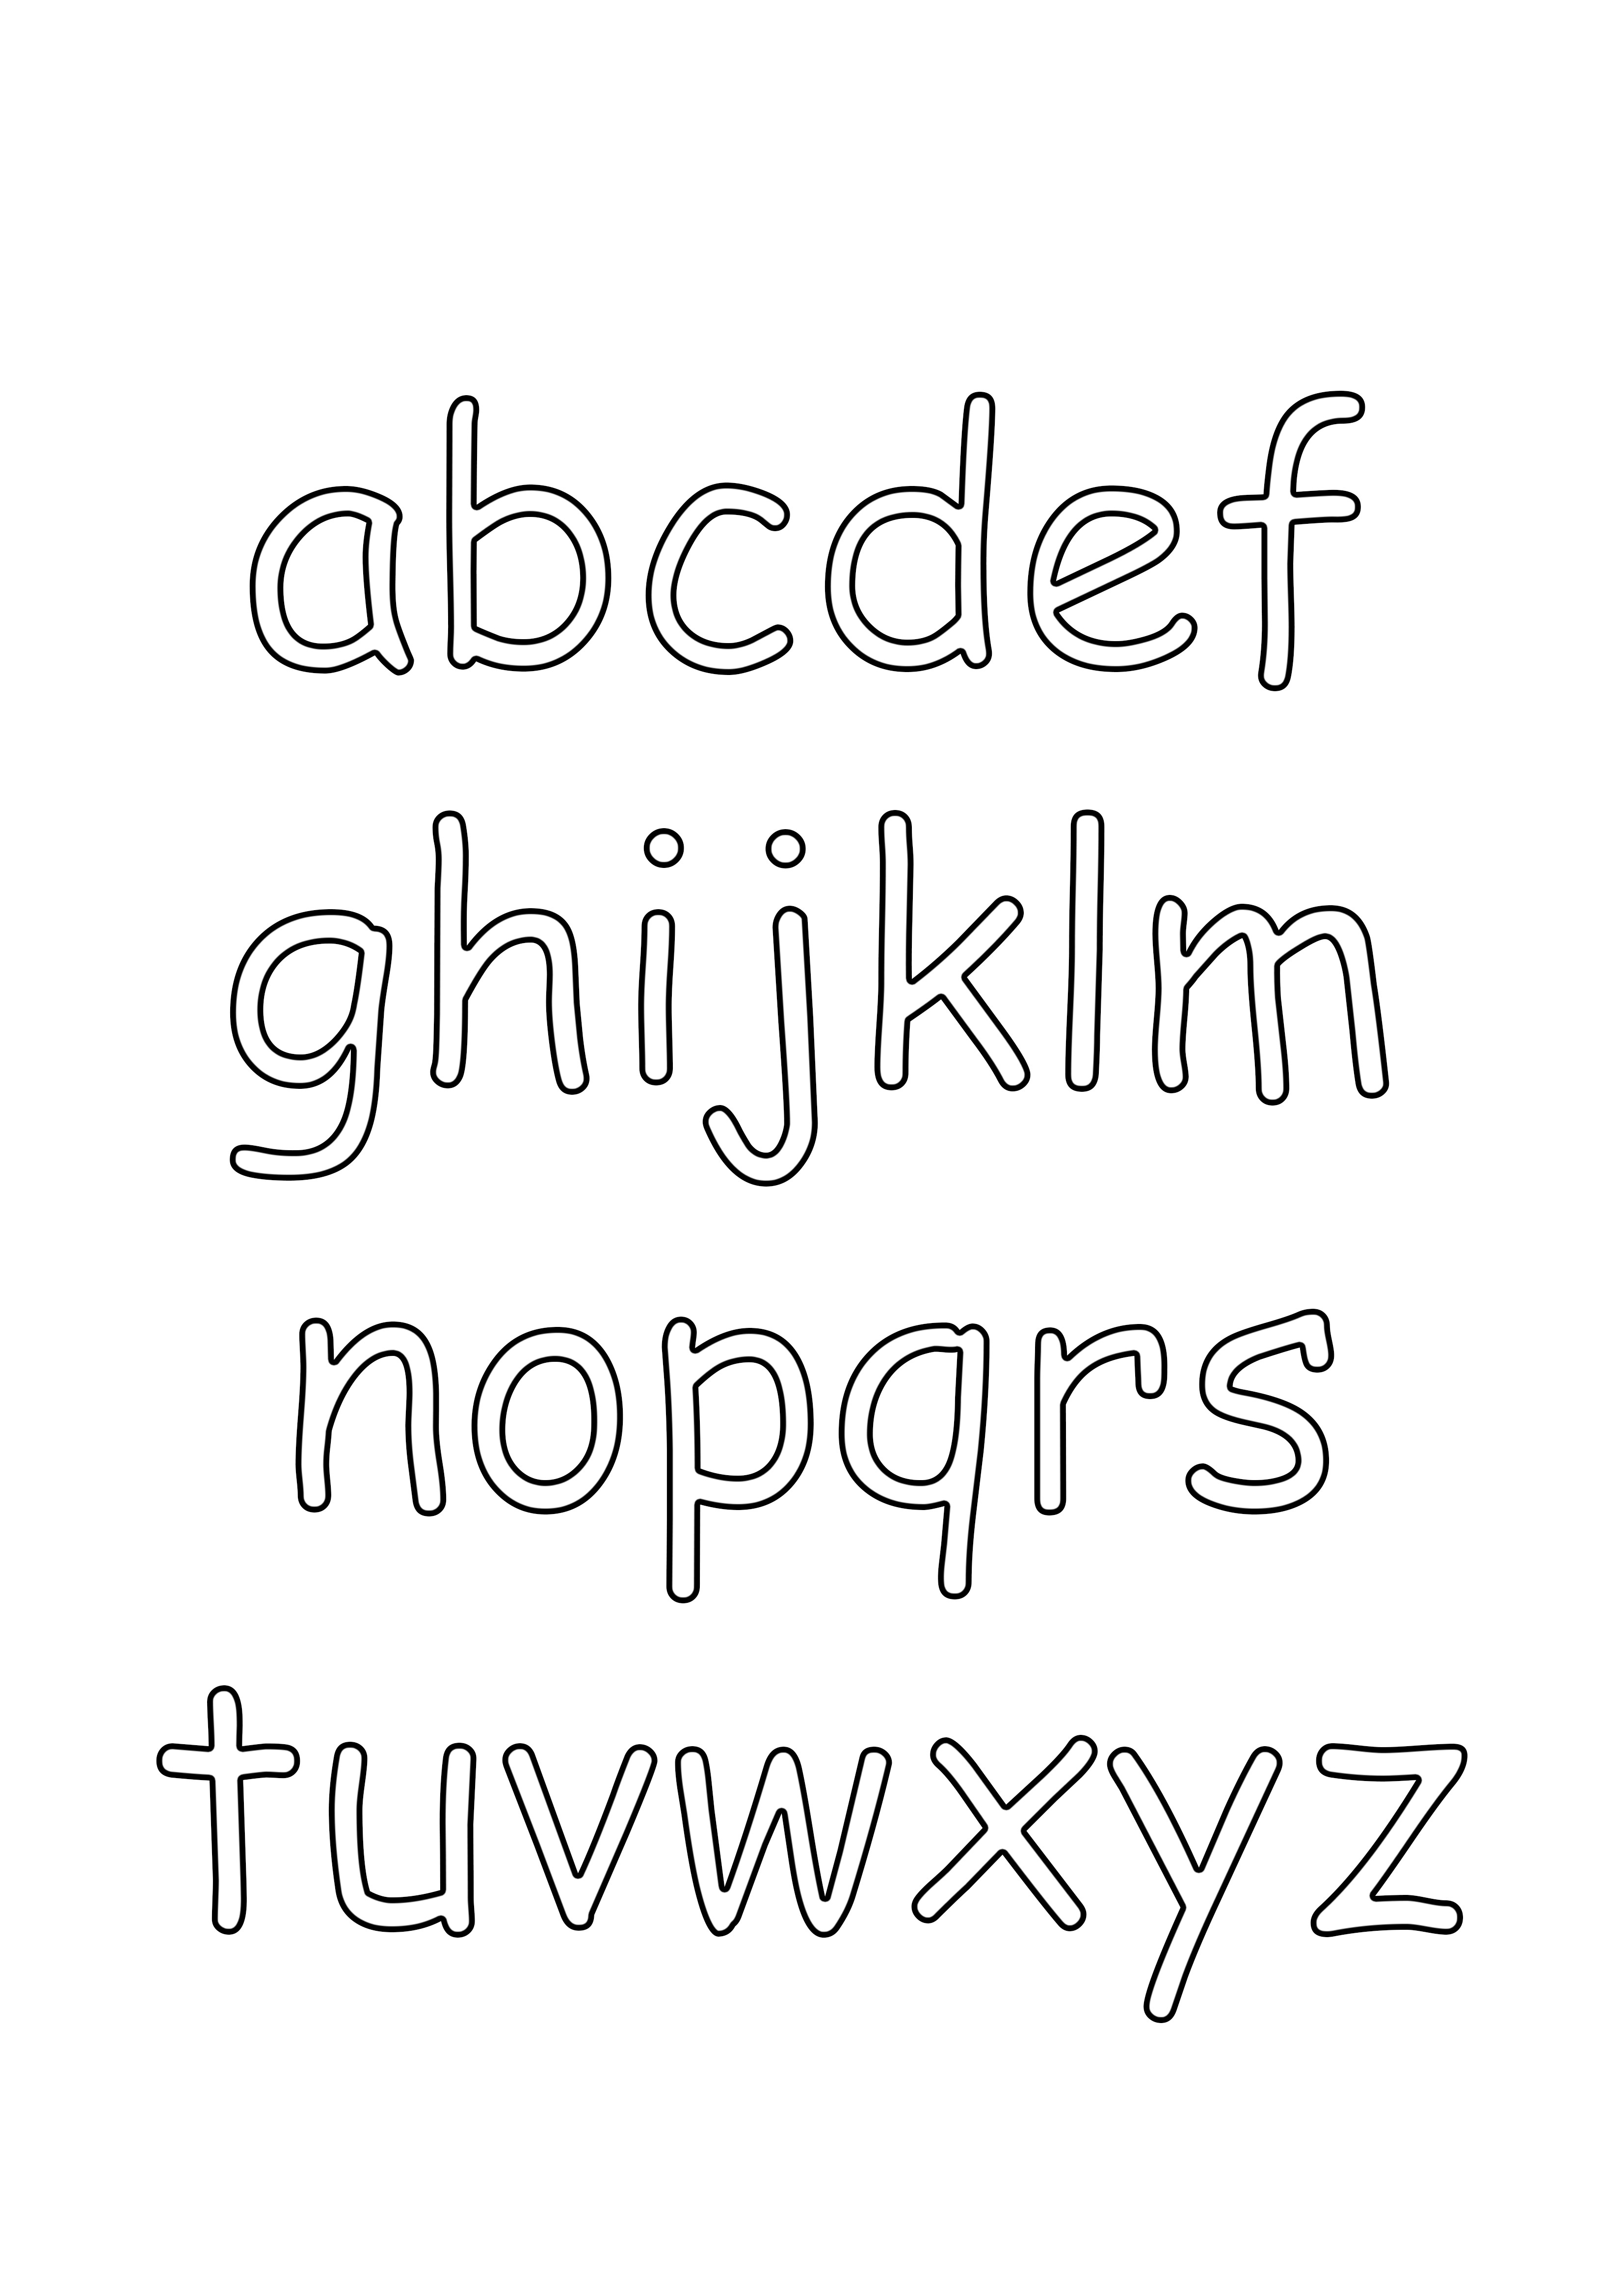 Stampa e colora l'alfabeto minuscolo gratuitamente